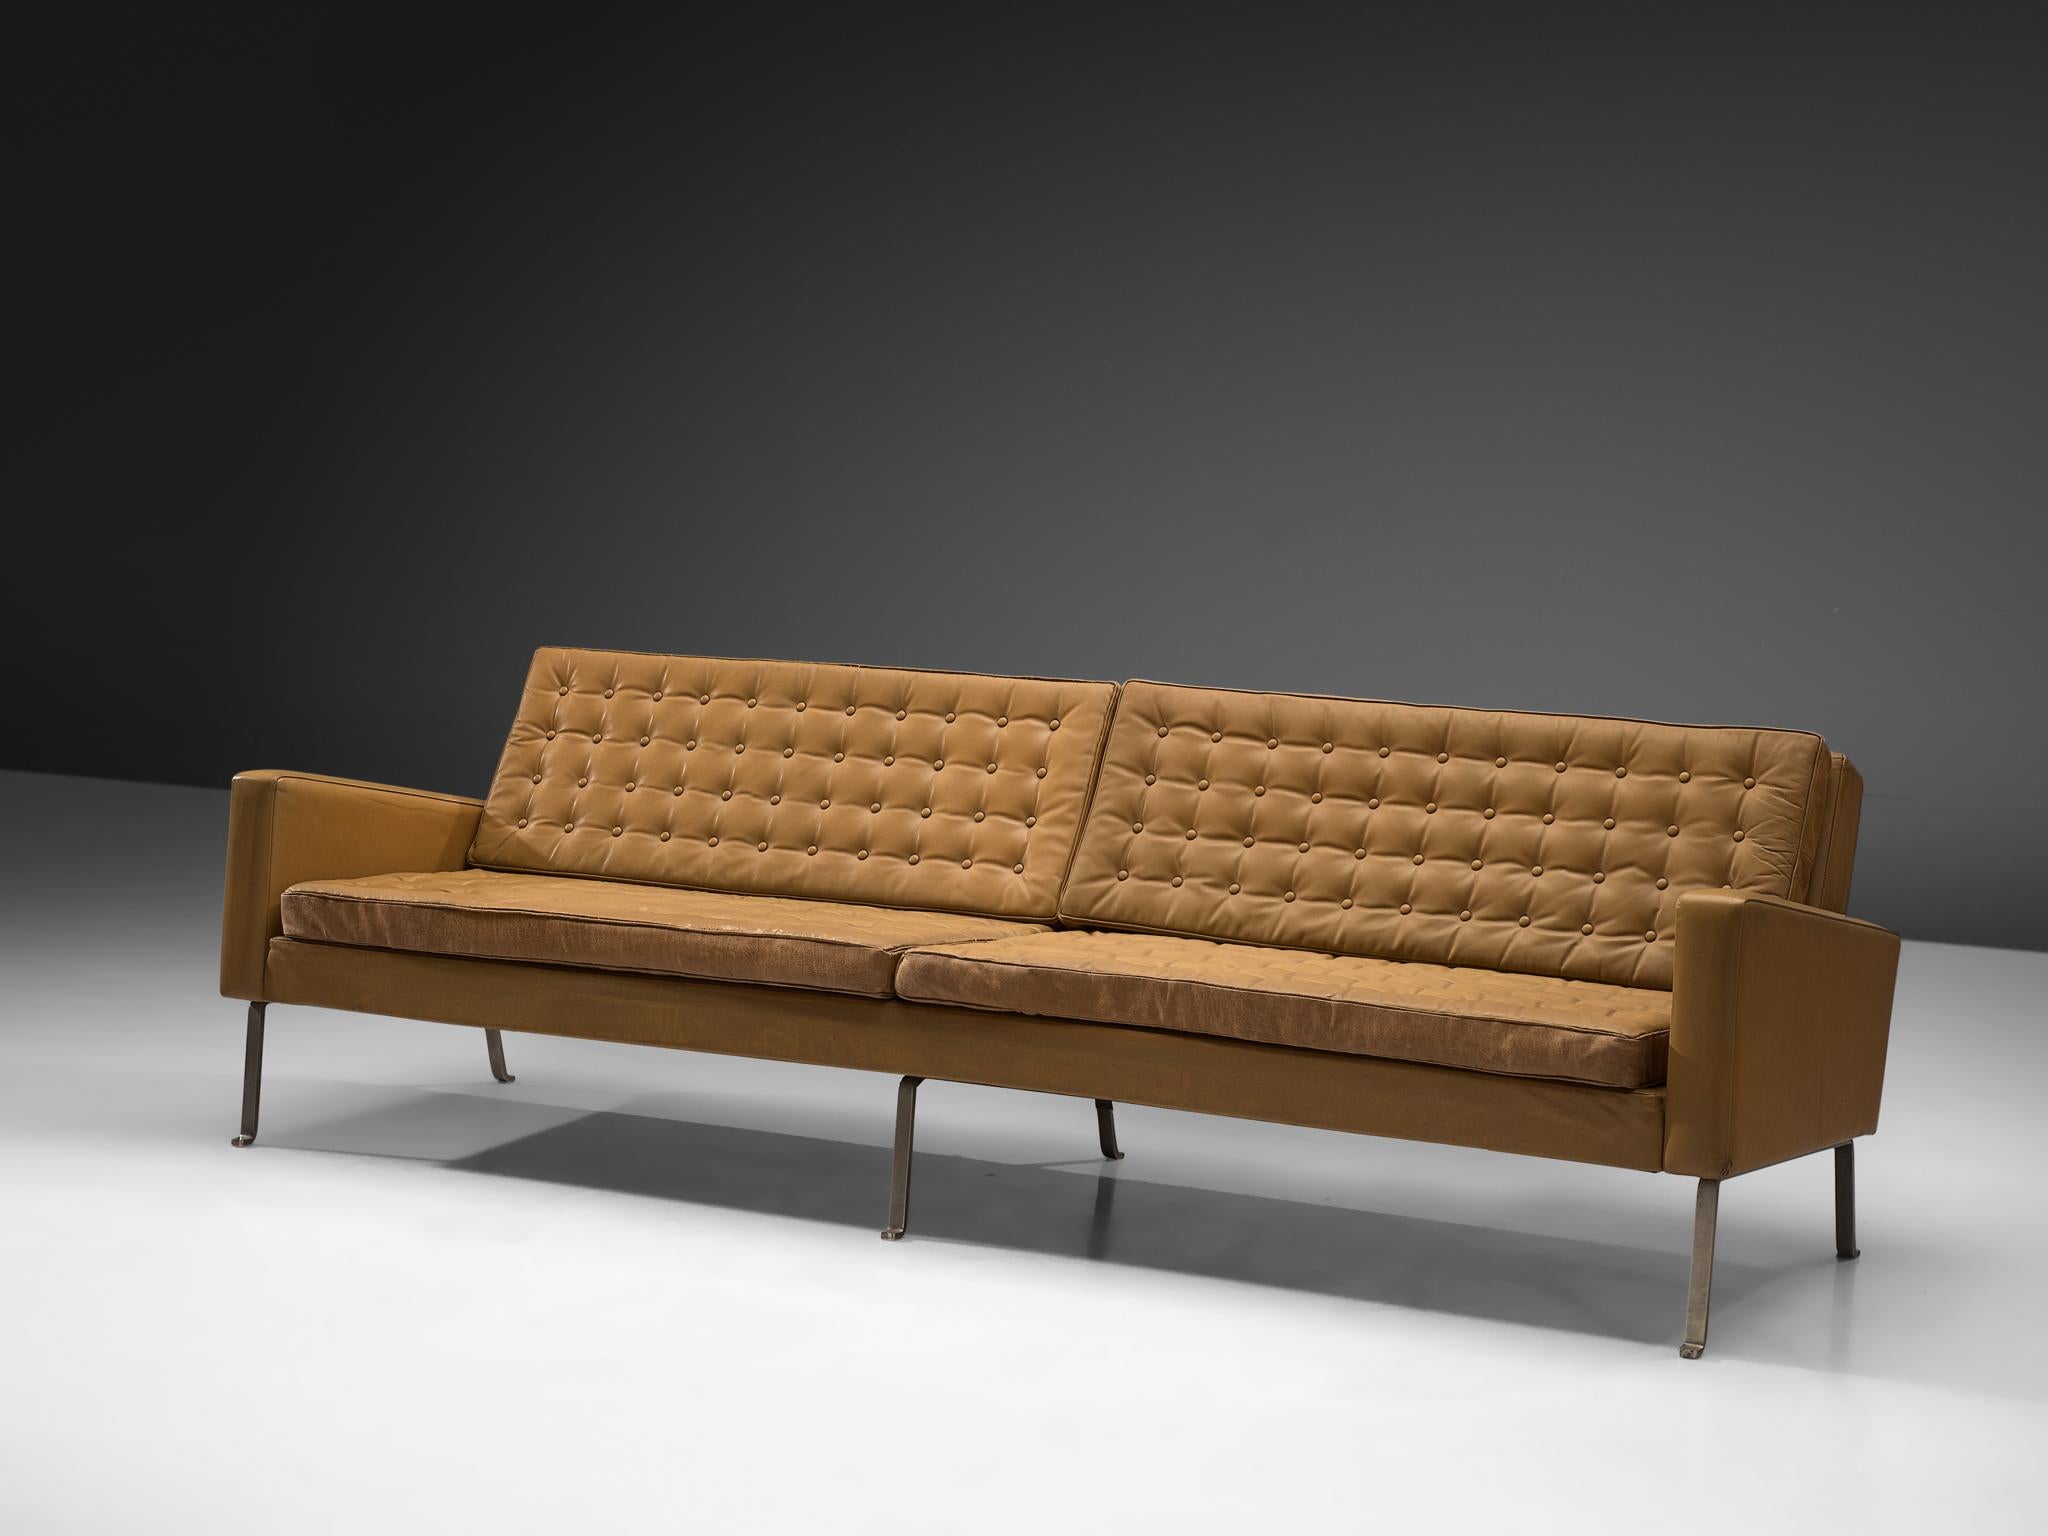 Roland Rainer für Wilkhahn, Sofa, Leder, Metall, Deutschland, 1960er Jahre

Modernes viersitziges Sofa von Roland Rainer. Dieses große Sofa besticht durch sein außergewöhnliches Design, das gleichzeitig klar und warm ist. Das Metallgestell trägt